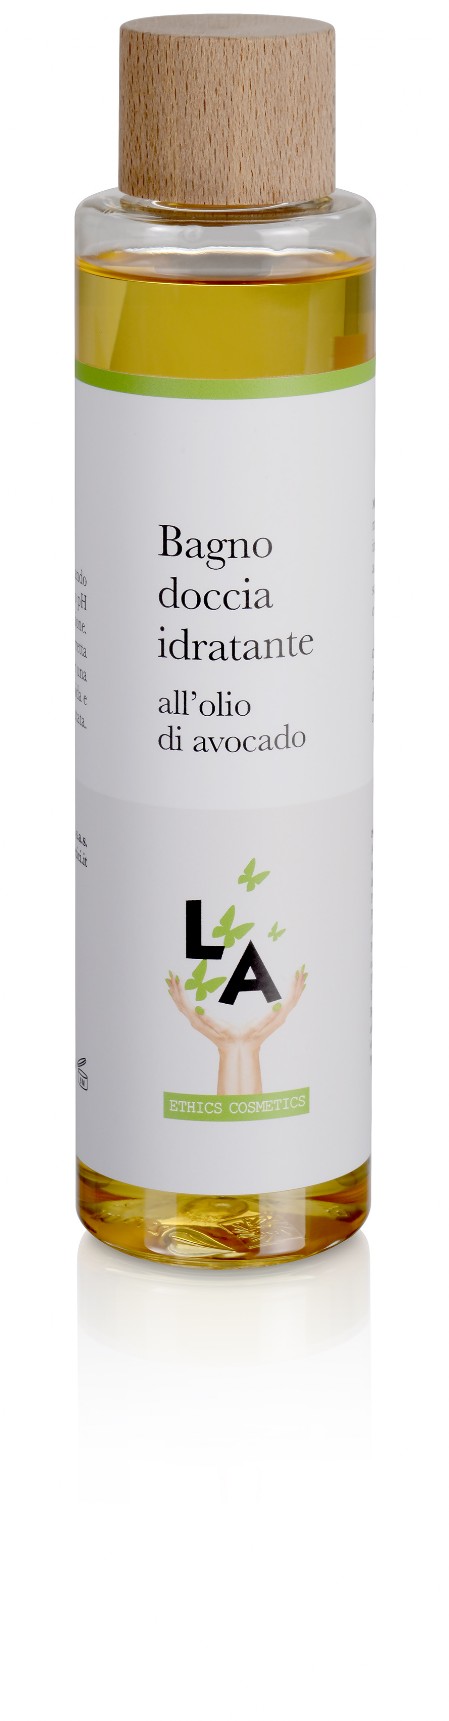 LA100-2 Bagno doccia idratante all’olio di avocado